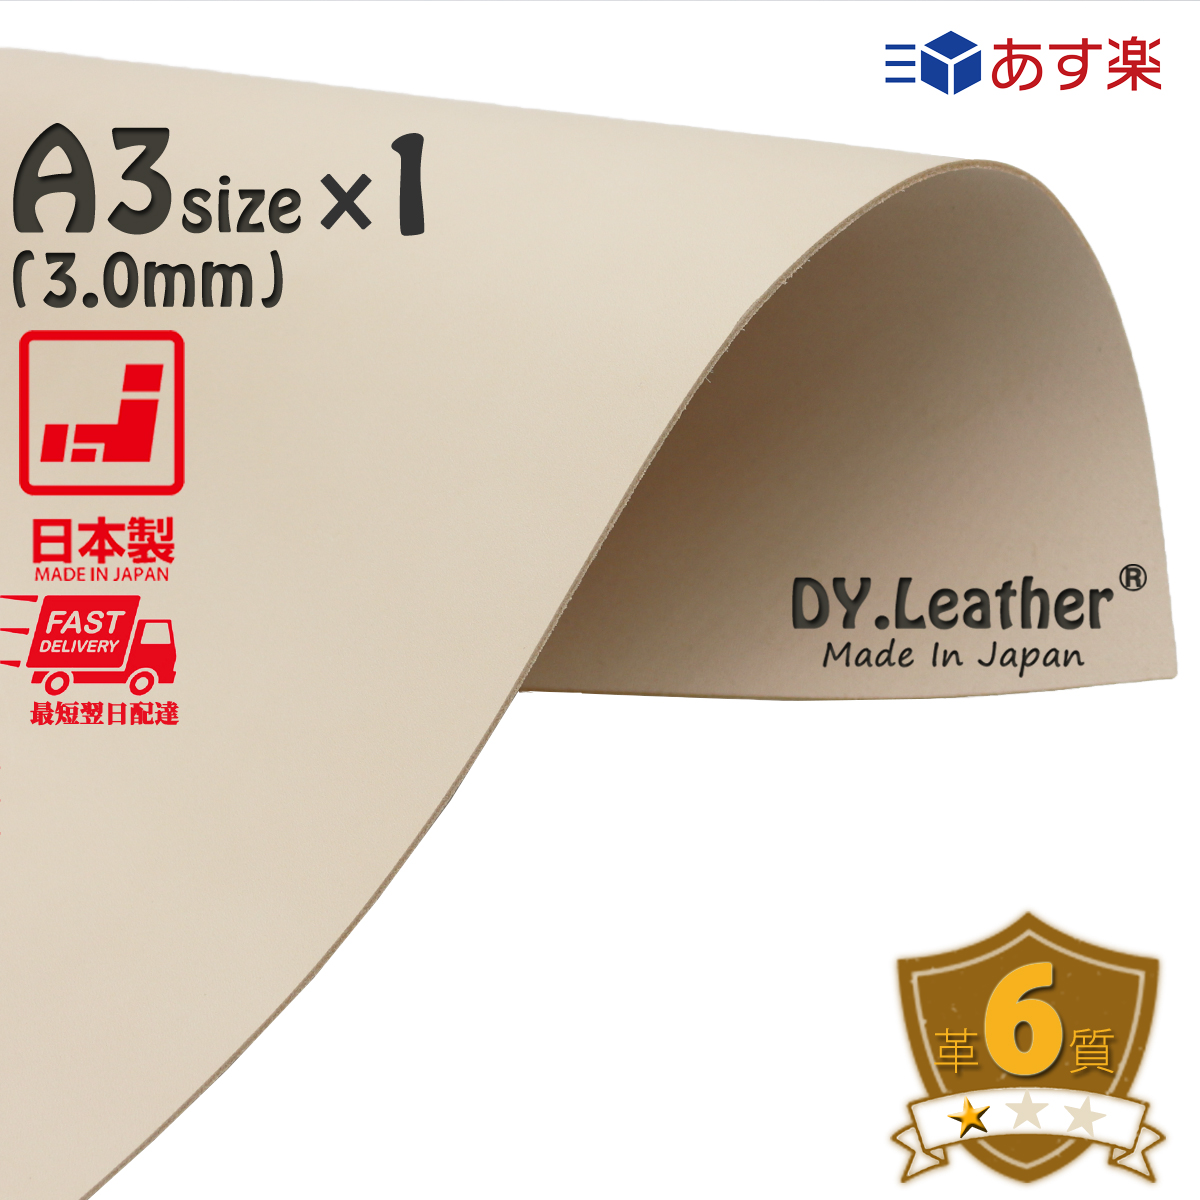 人気ブランド多数対象 ヌメ革DY.Leather 日本製 タンニンなめし レザー